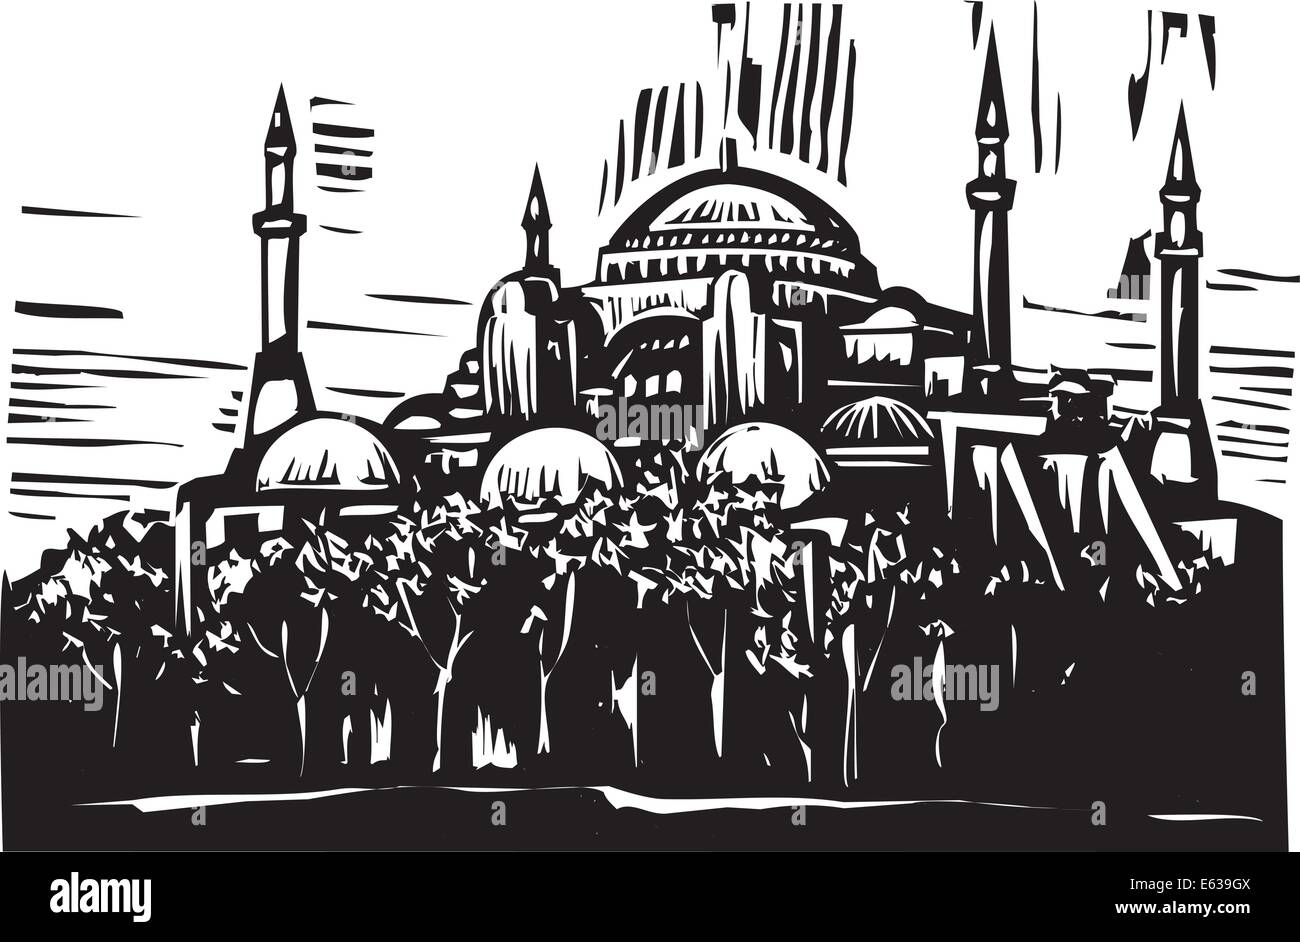 Holzschnitt-Stil-Bild von der griechisch-orthodoxen Kirche wandte sich Moschee in Istanbul Türkei. Stock Vektor